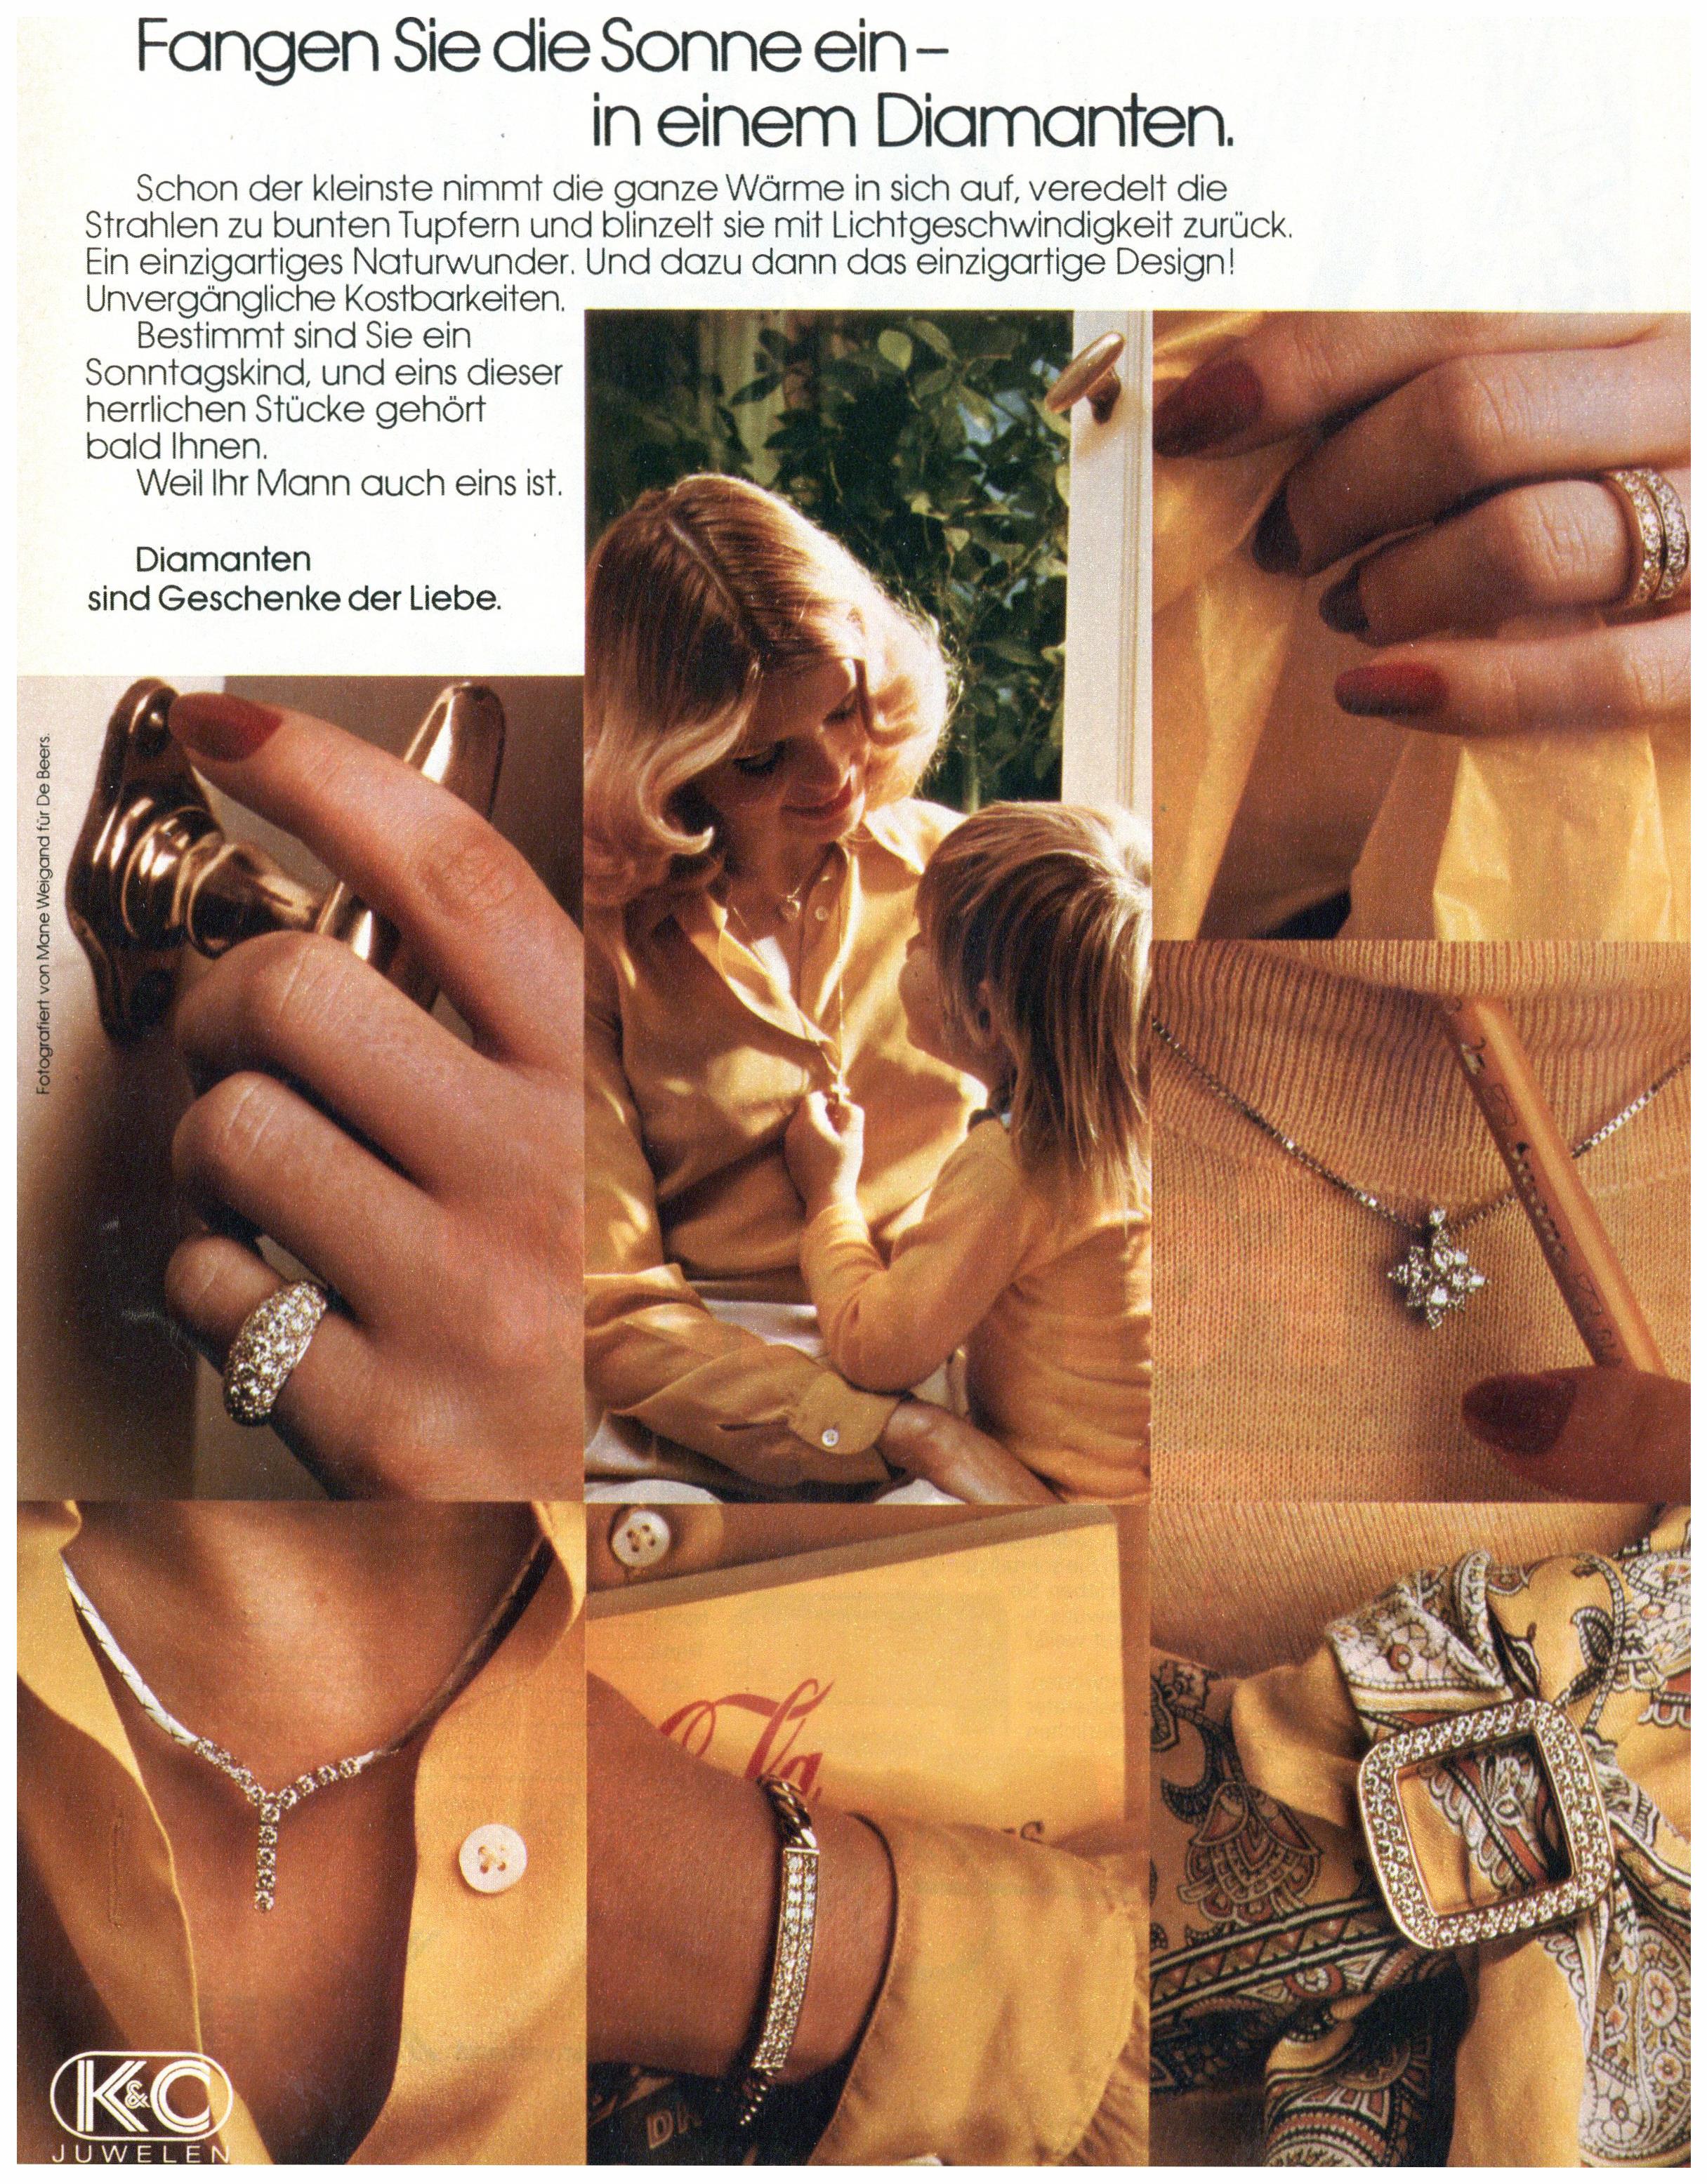 K&O Juwelen 1975 0.jpg